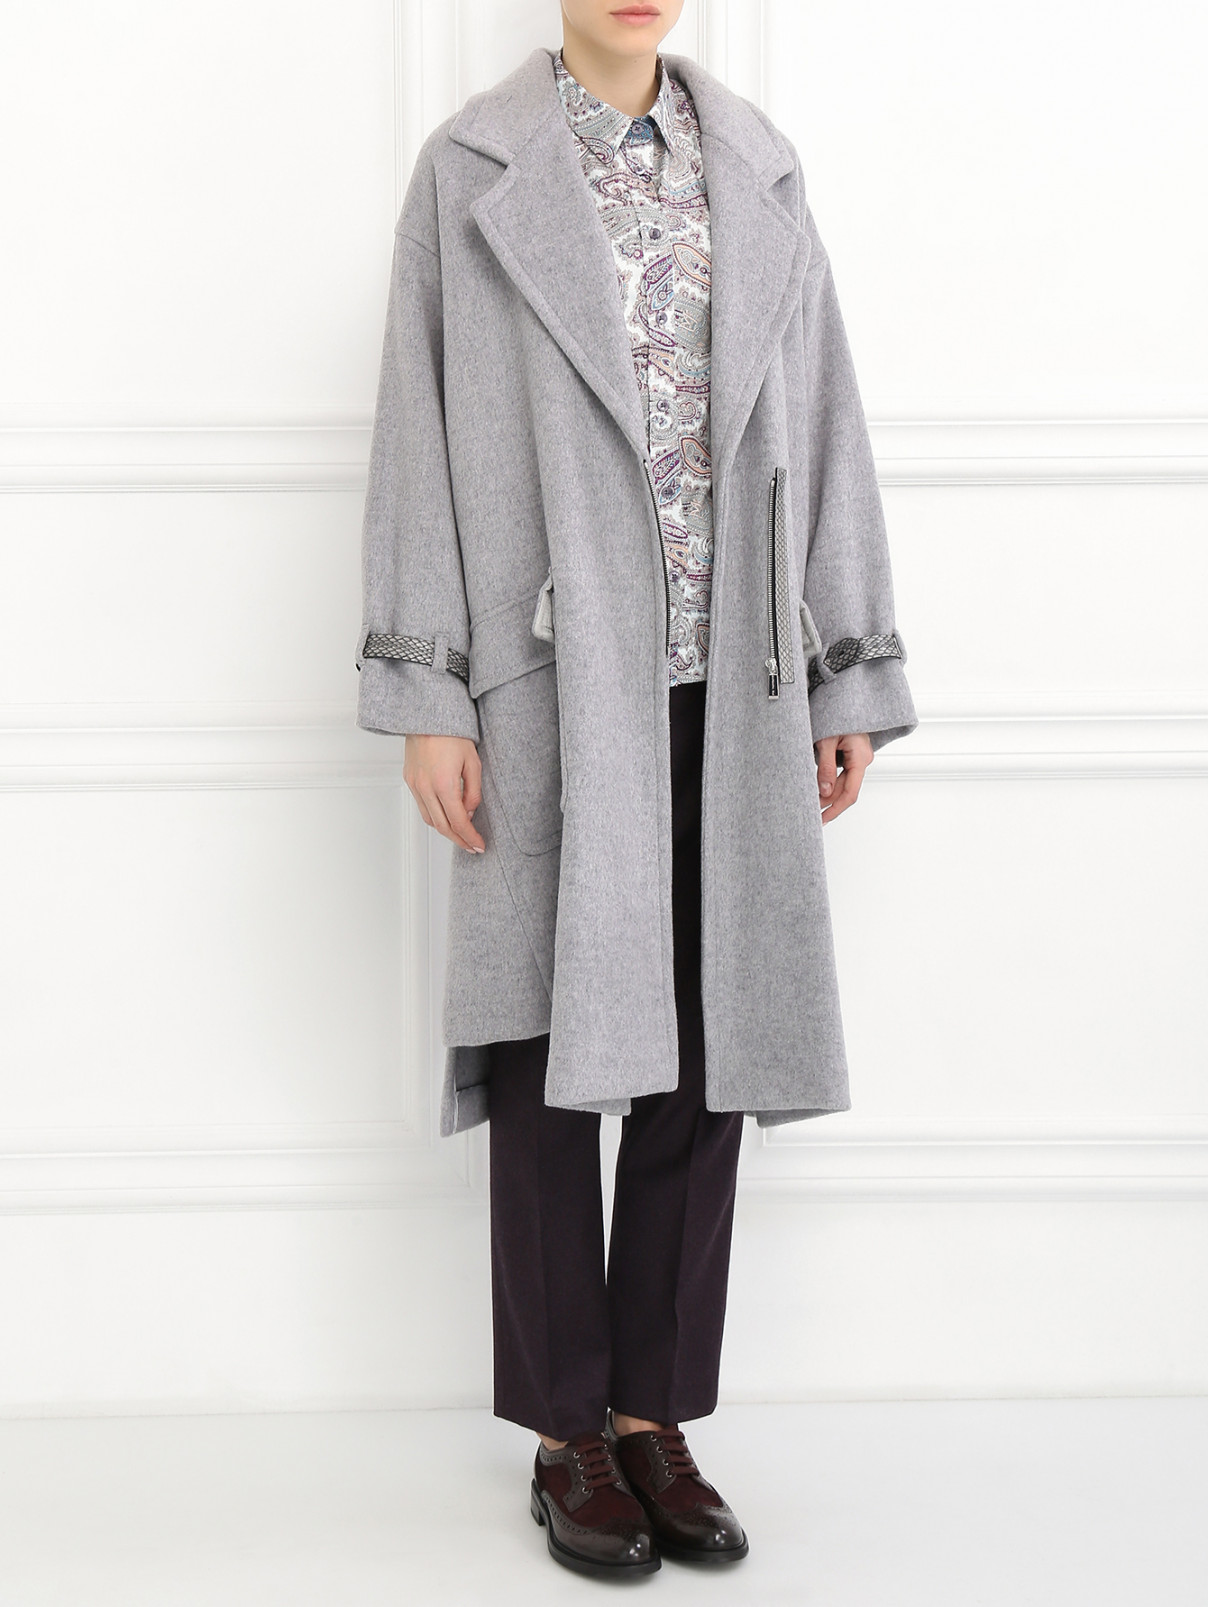 Пальто из шерсти с накладными карманами и металлической фурнитурой Barbara Bui  –  Модель Общий вид  – Цвет:  Серый